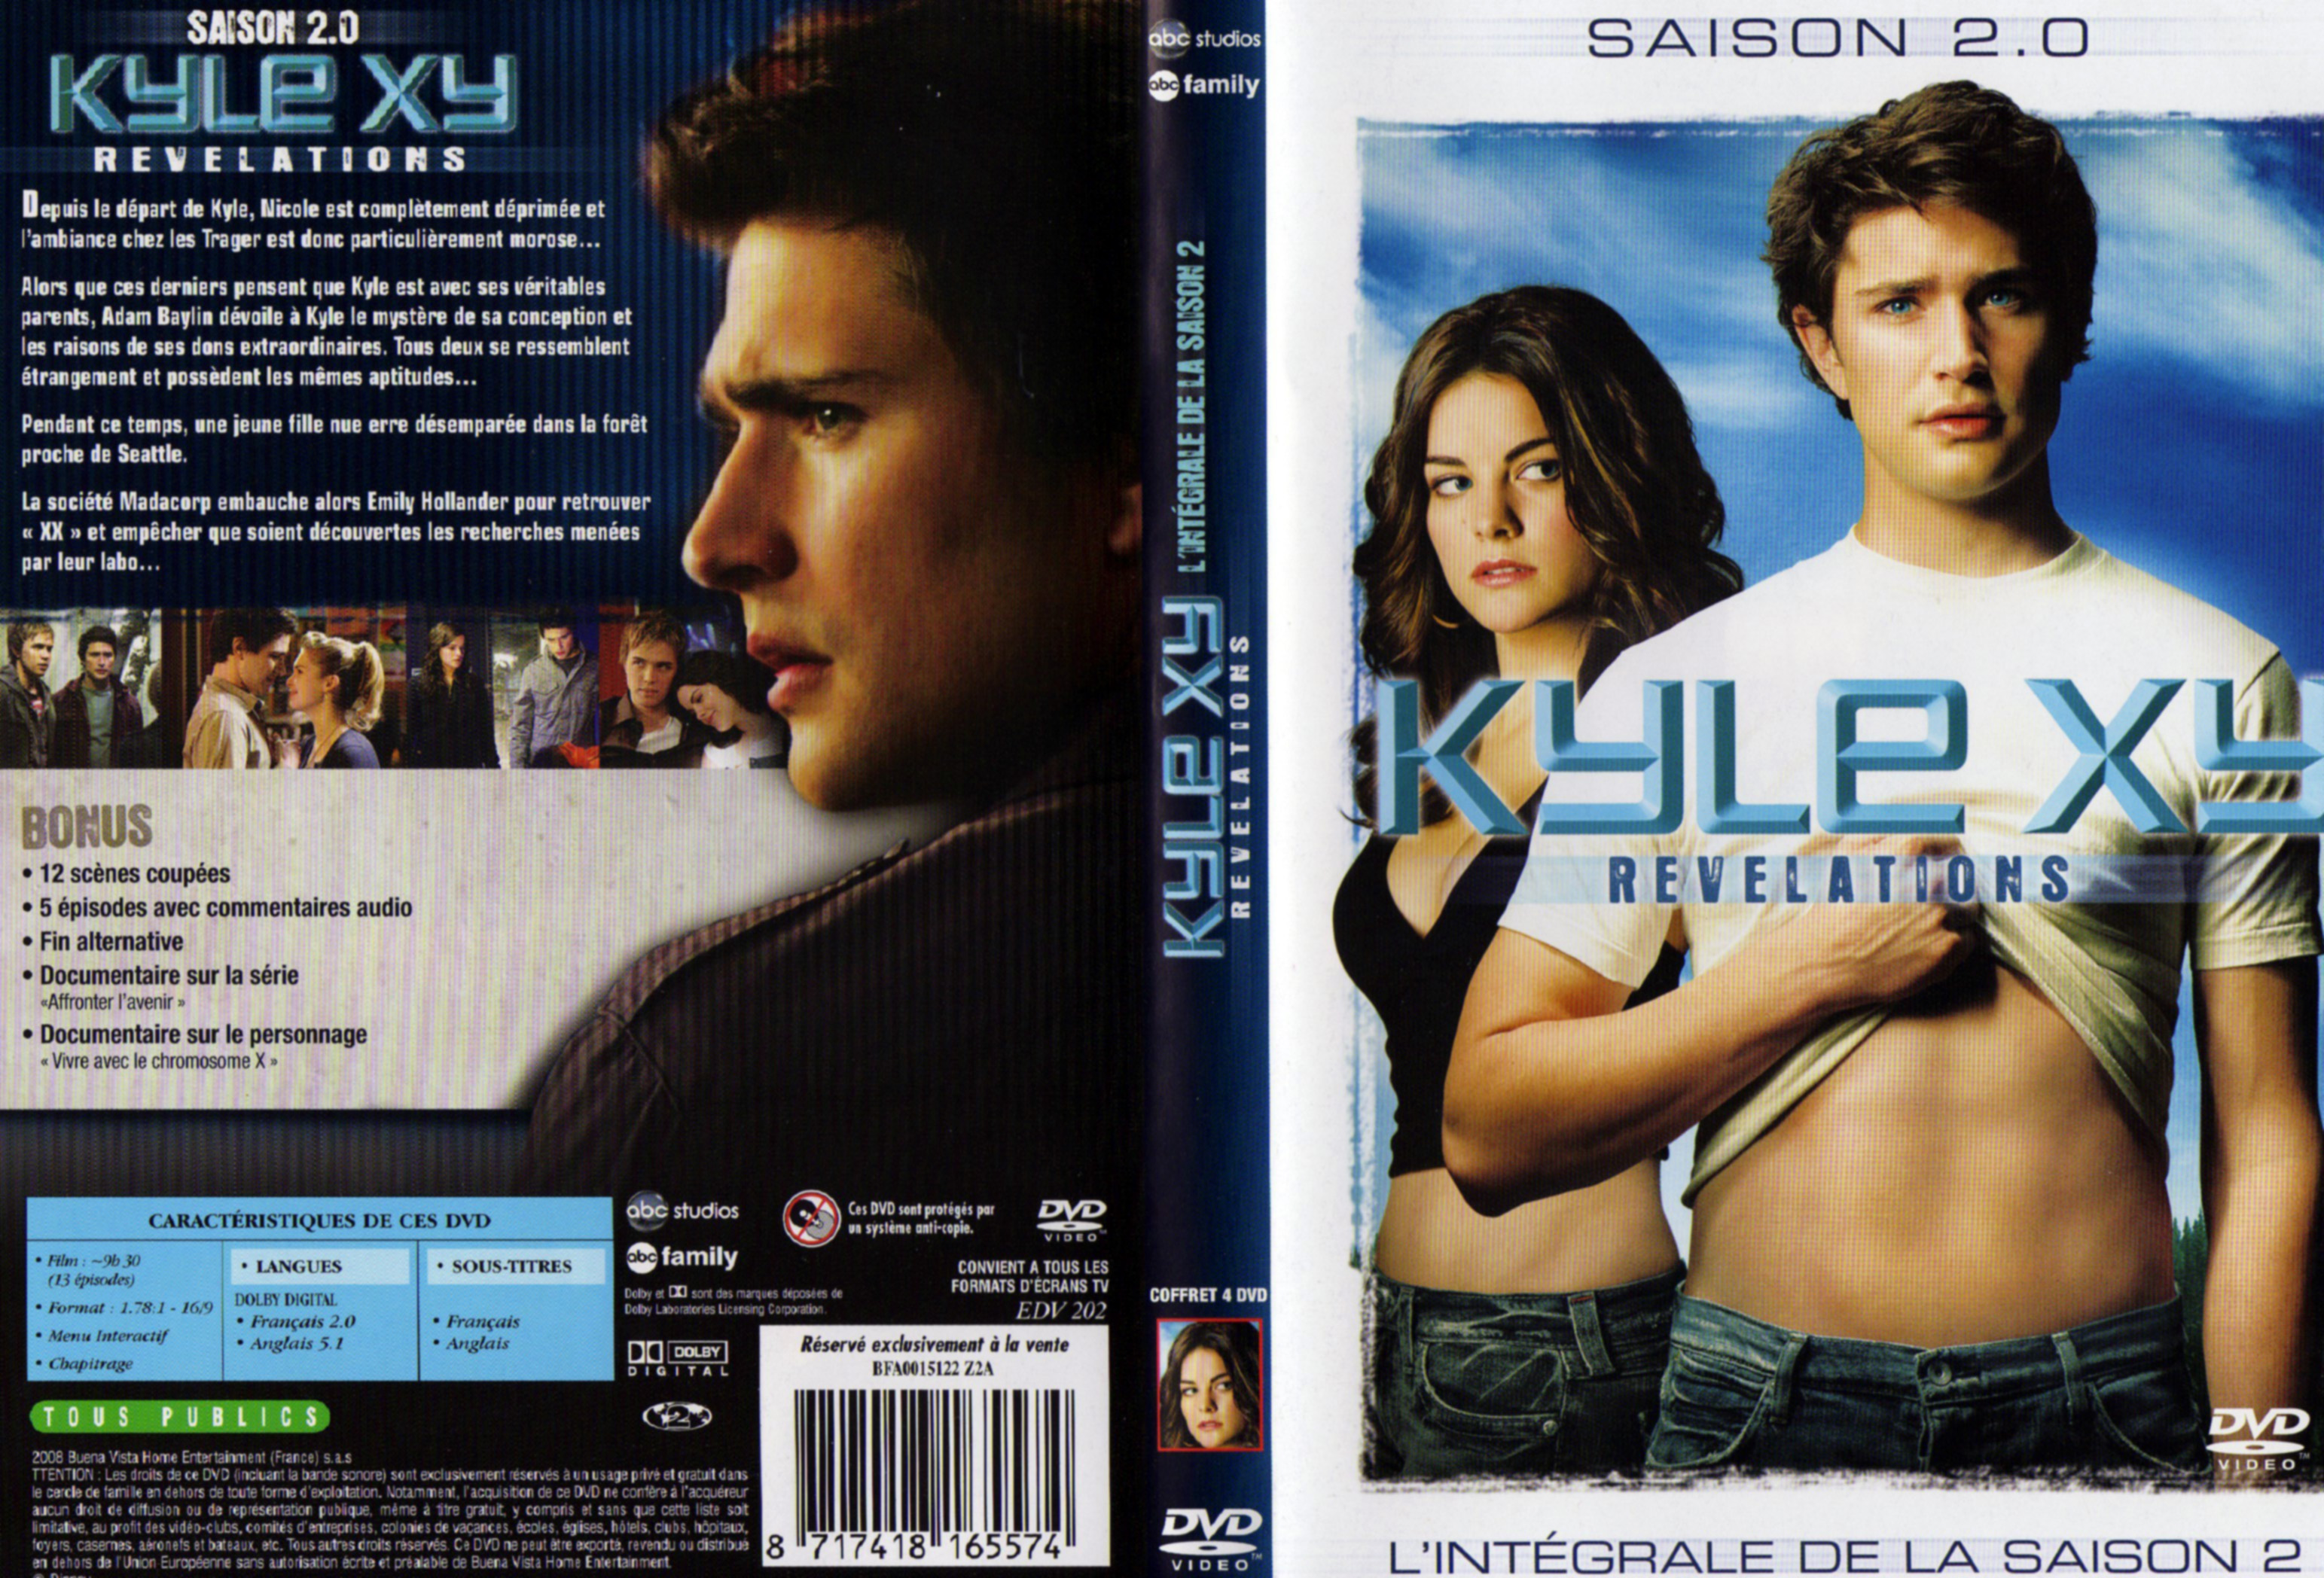 Jaquette DVD Kyle XY Saison 2 COFFRET